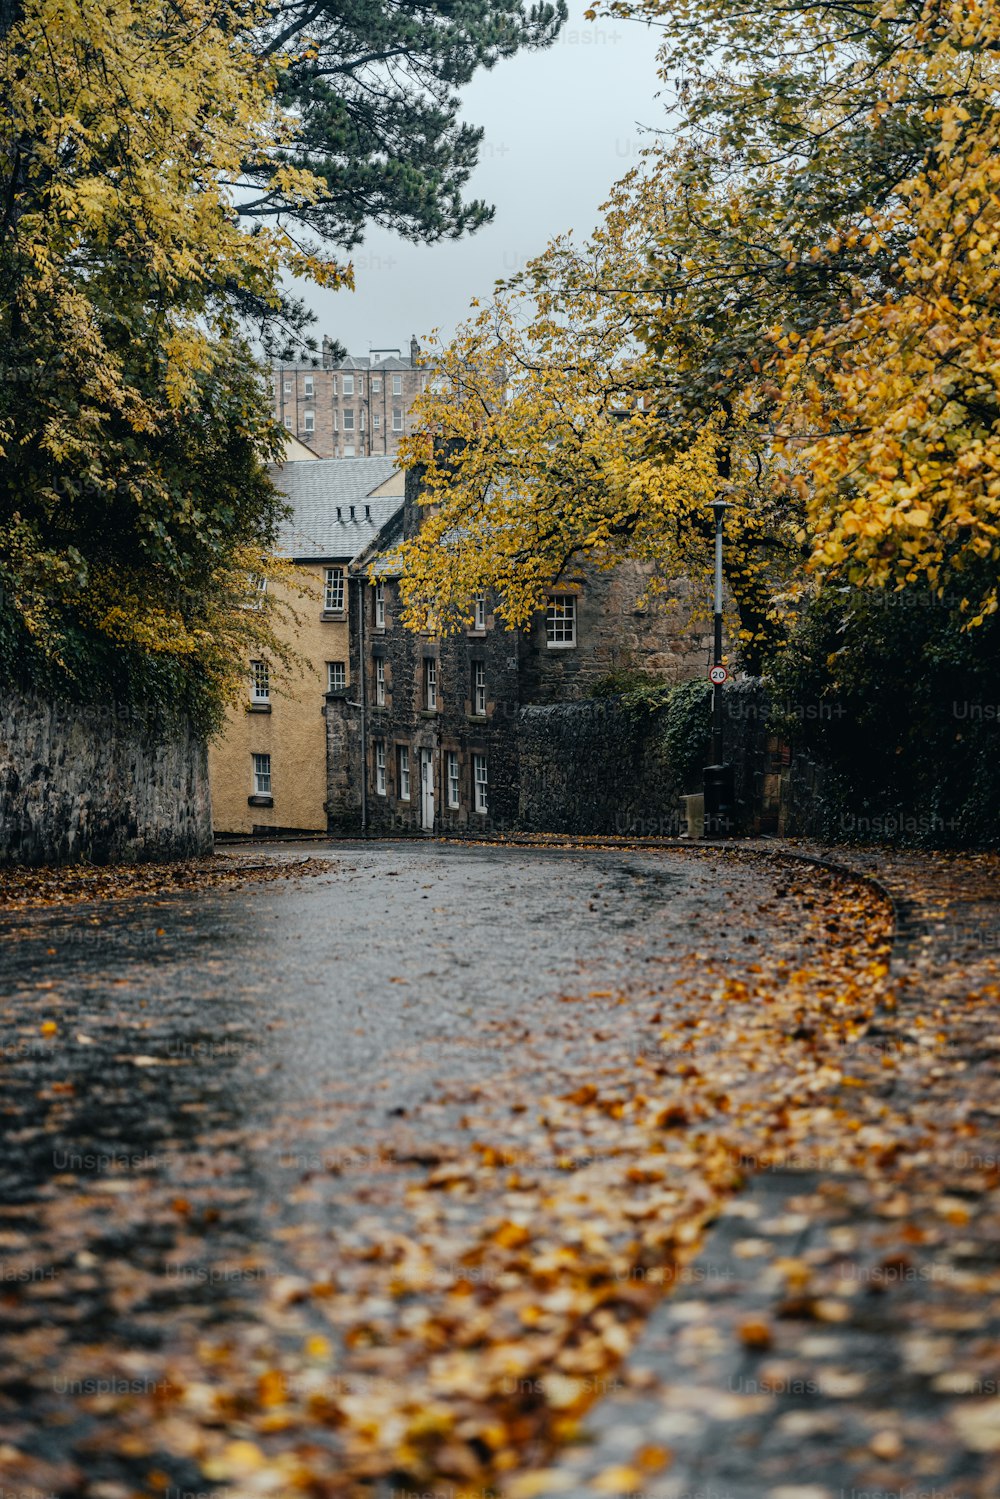 una calle mojada con muchas hojas en el suelo